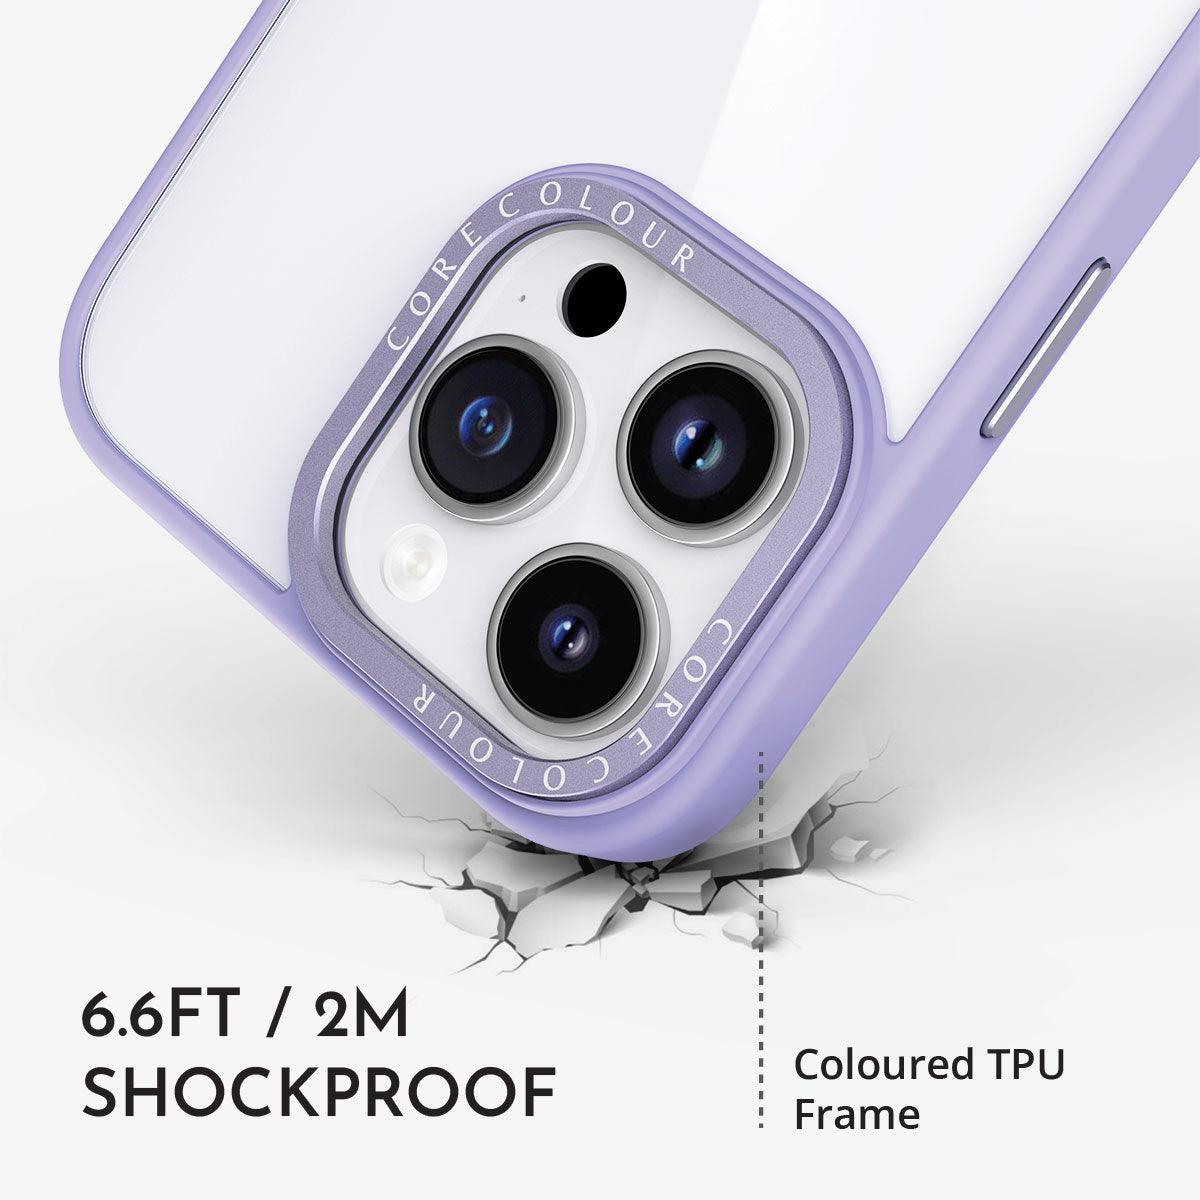 iPhone 7 Lavender Hush Clear Phone Case - CORECOLOUR